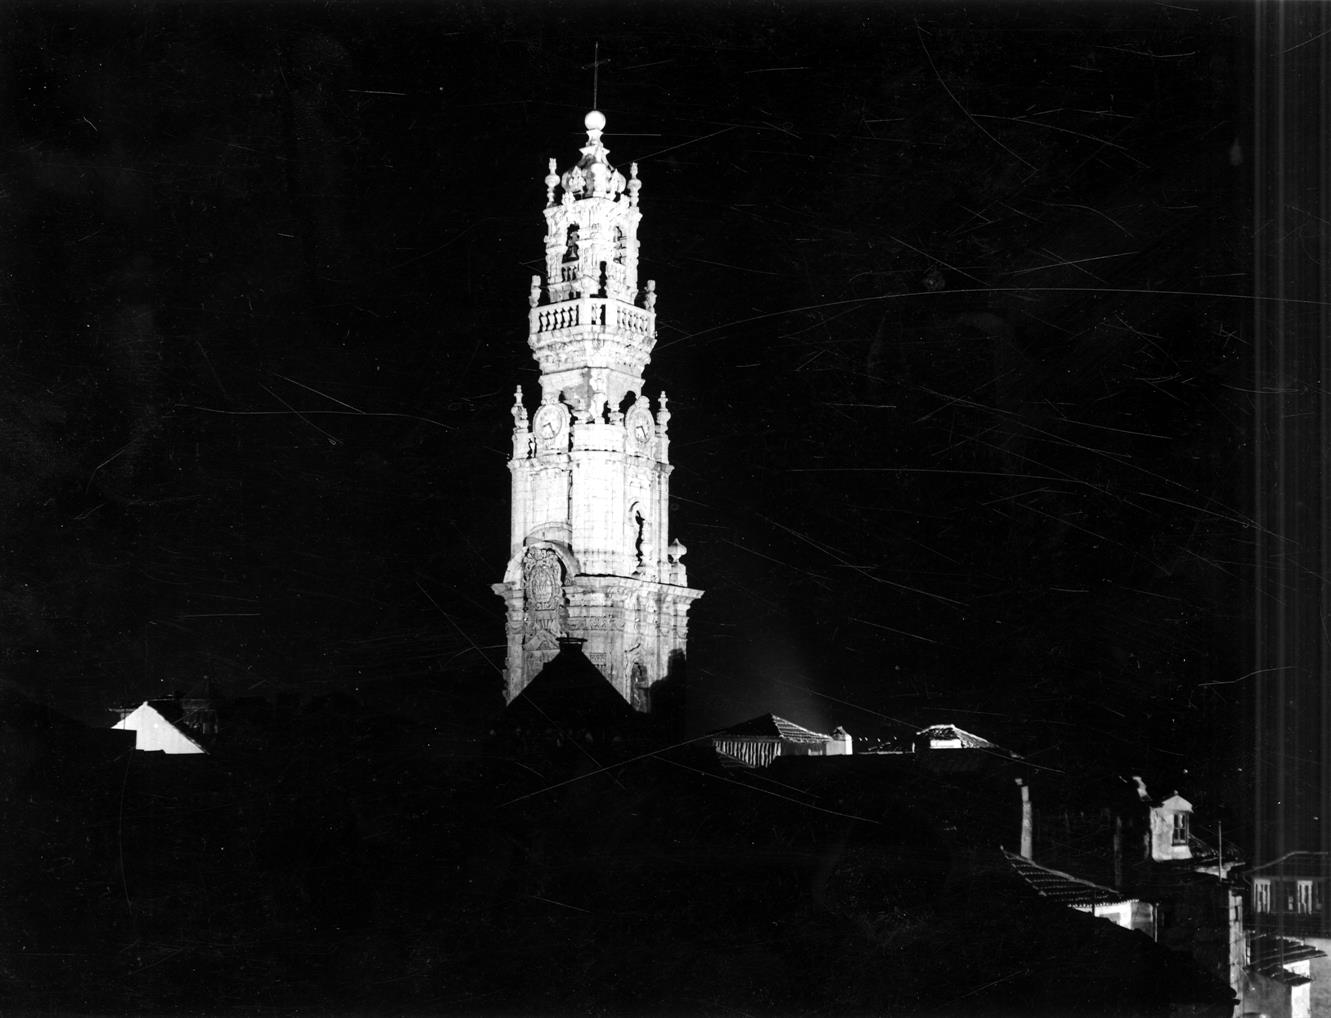 Vista nocturna da Torre dos Clérigos